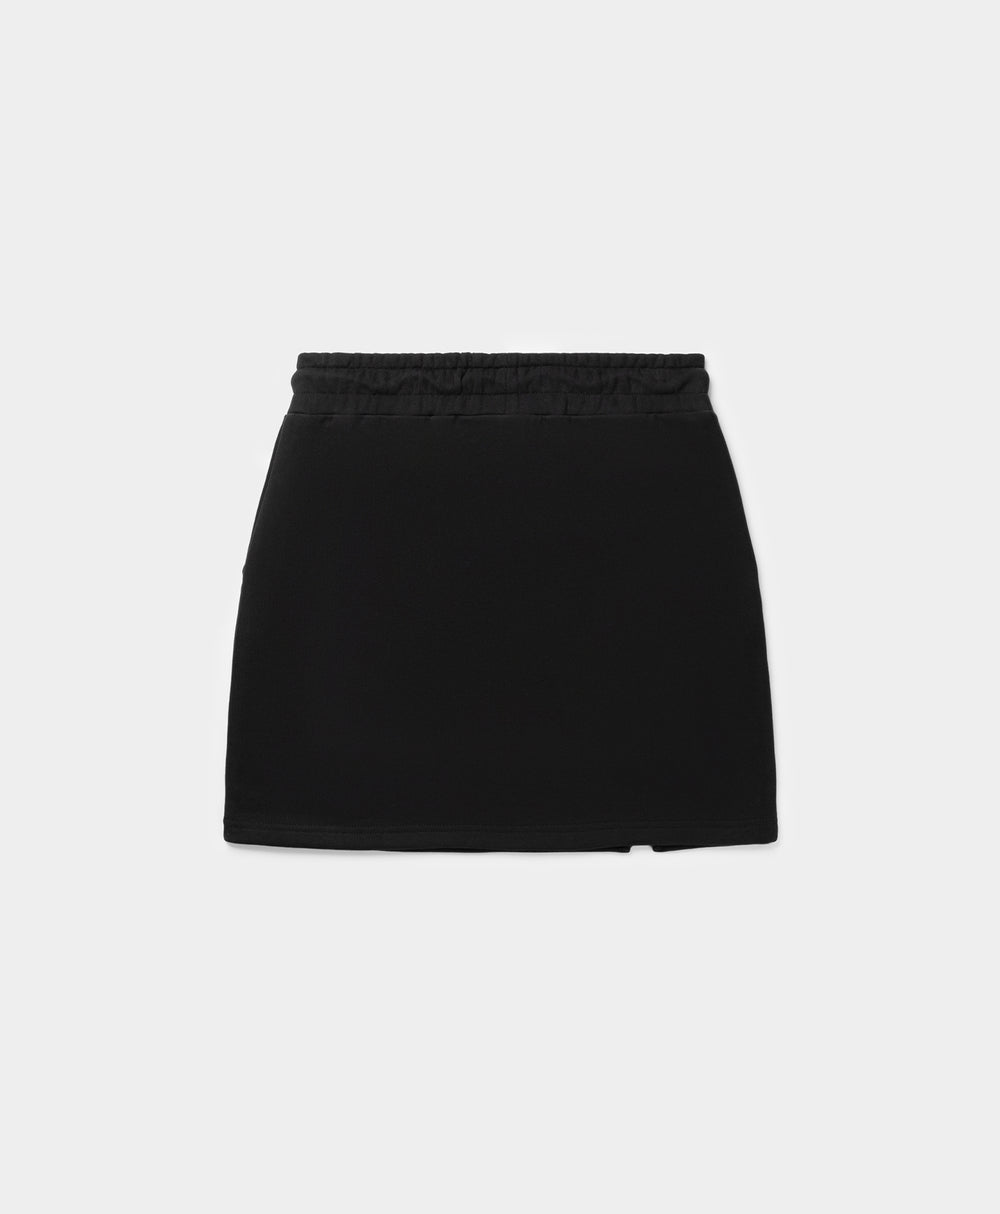 DP - Black Essential Skirt - Packshot - Rear